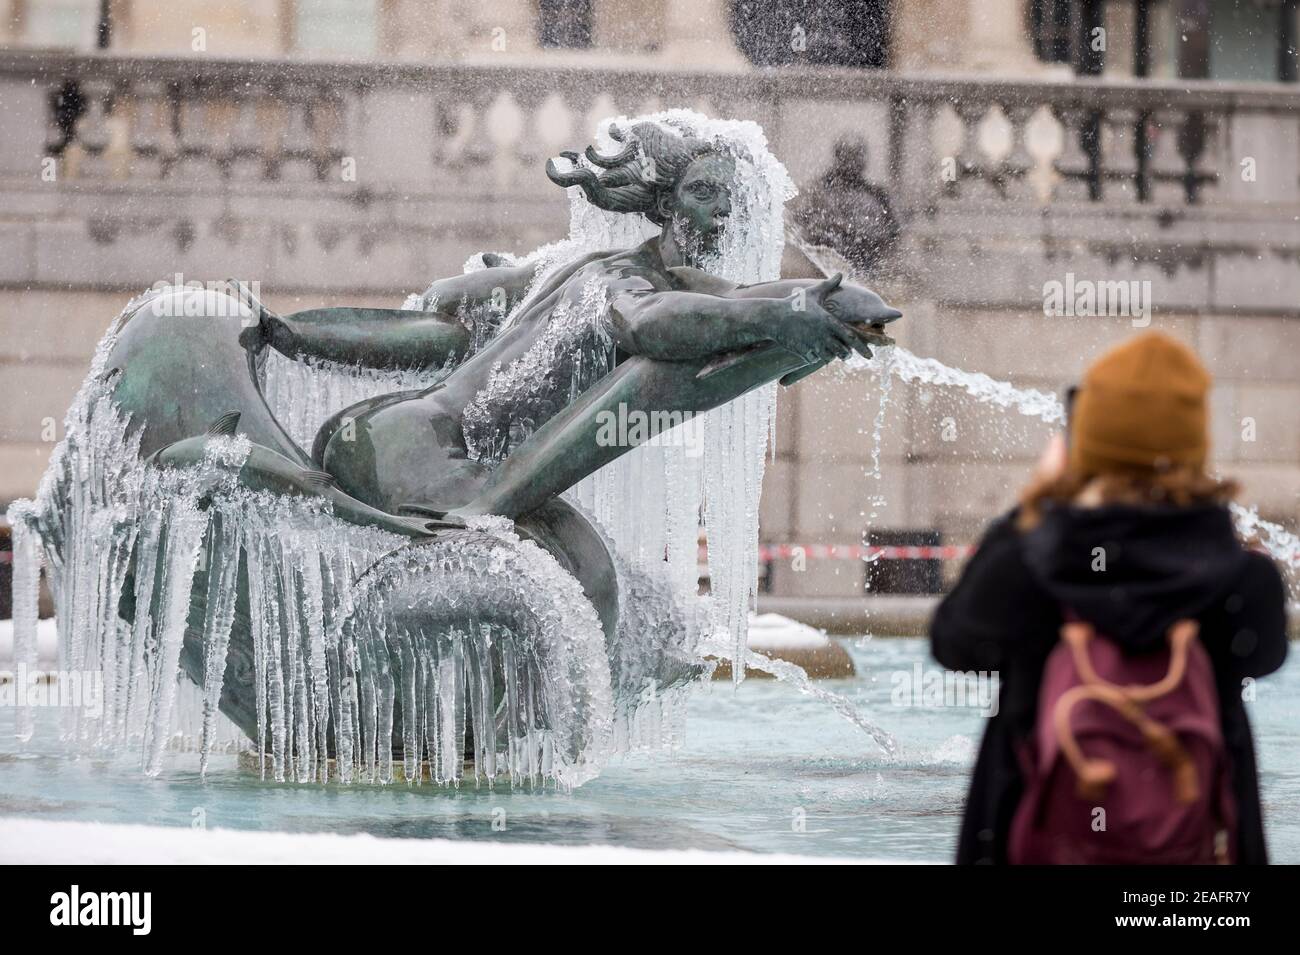 Londra, Regno Unito. 9 febbraio 2021. UK Weather: Una donna vede una fontana ghiacciata coperta di ghiaccio in Trafalgar Square durante le nevi leggere flurries, mentre il clima freddo portato da Storm Darcy continua. Credit: Stephen Chung / Alamy Live News Foto Stock